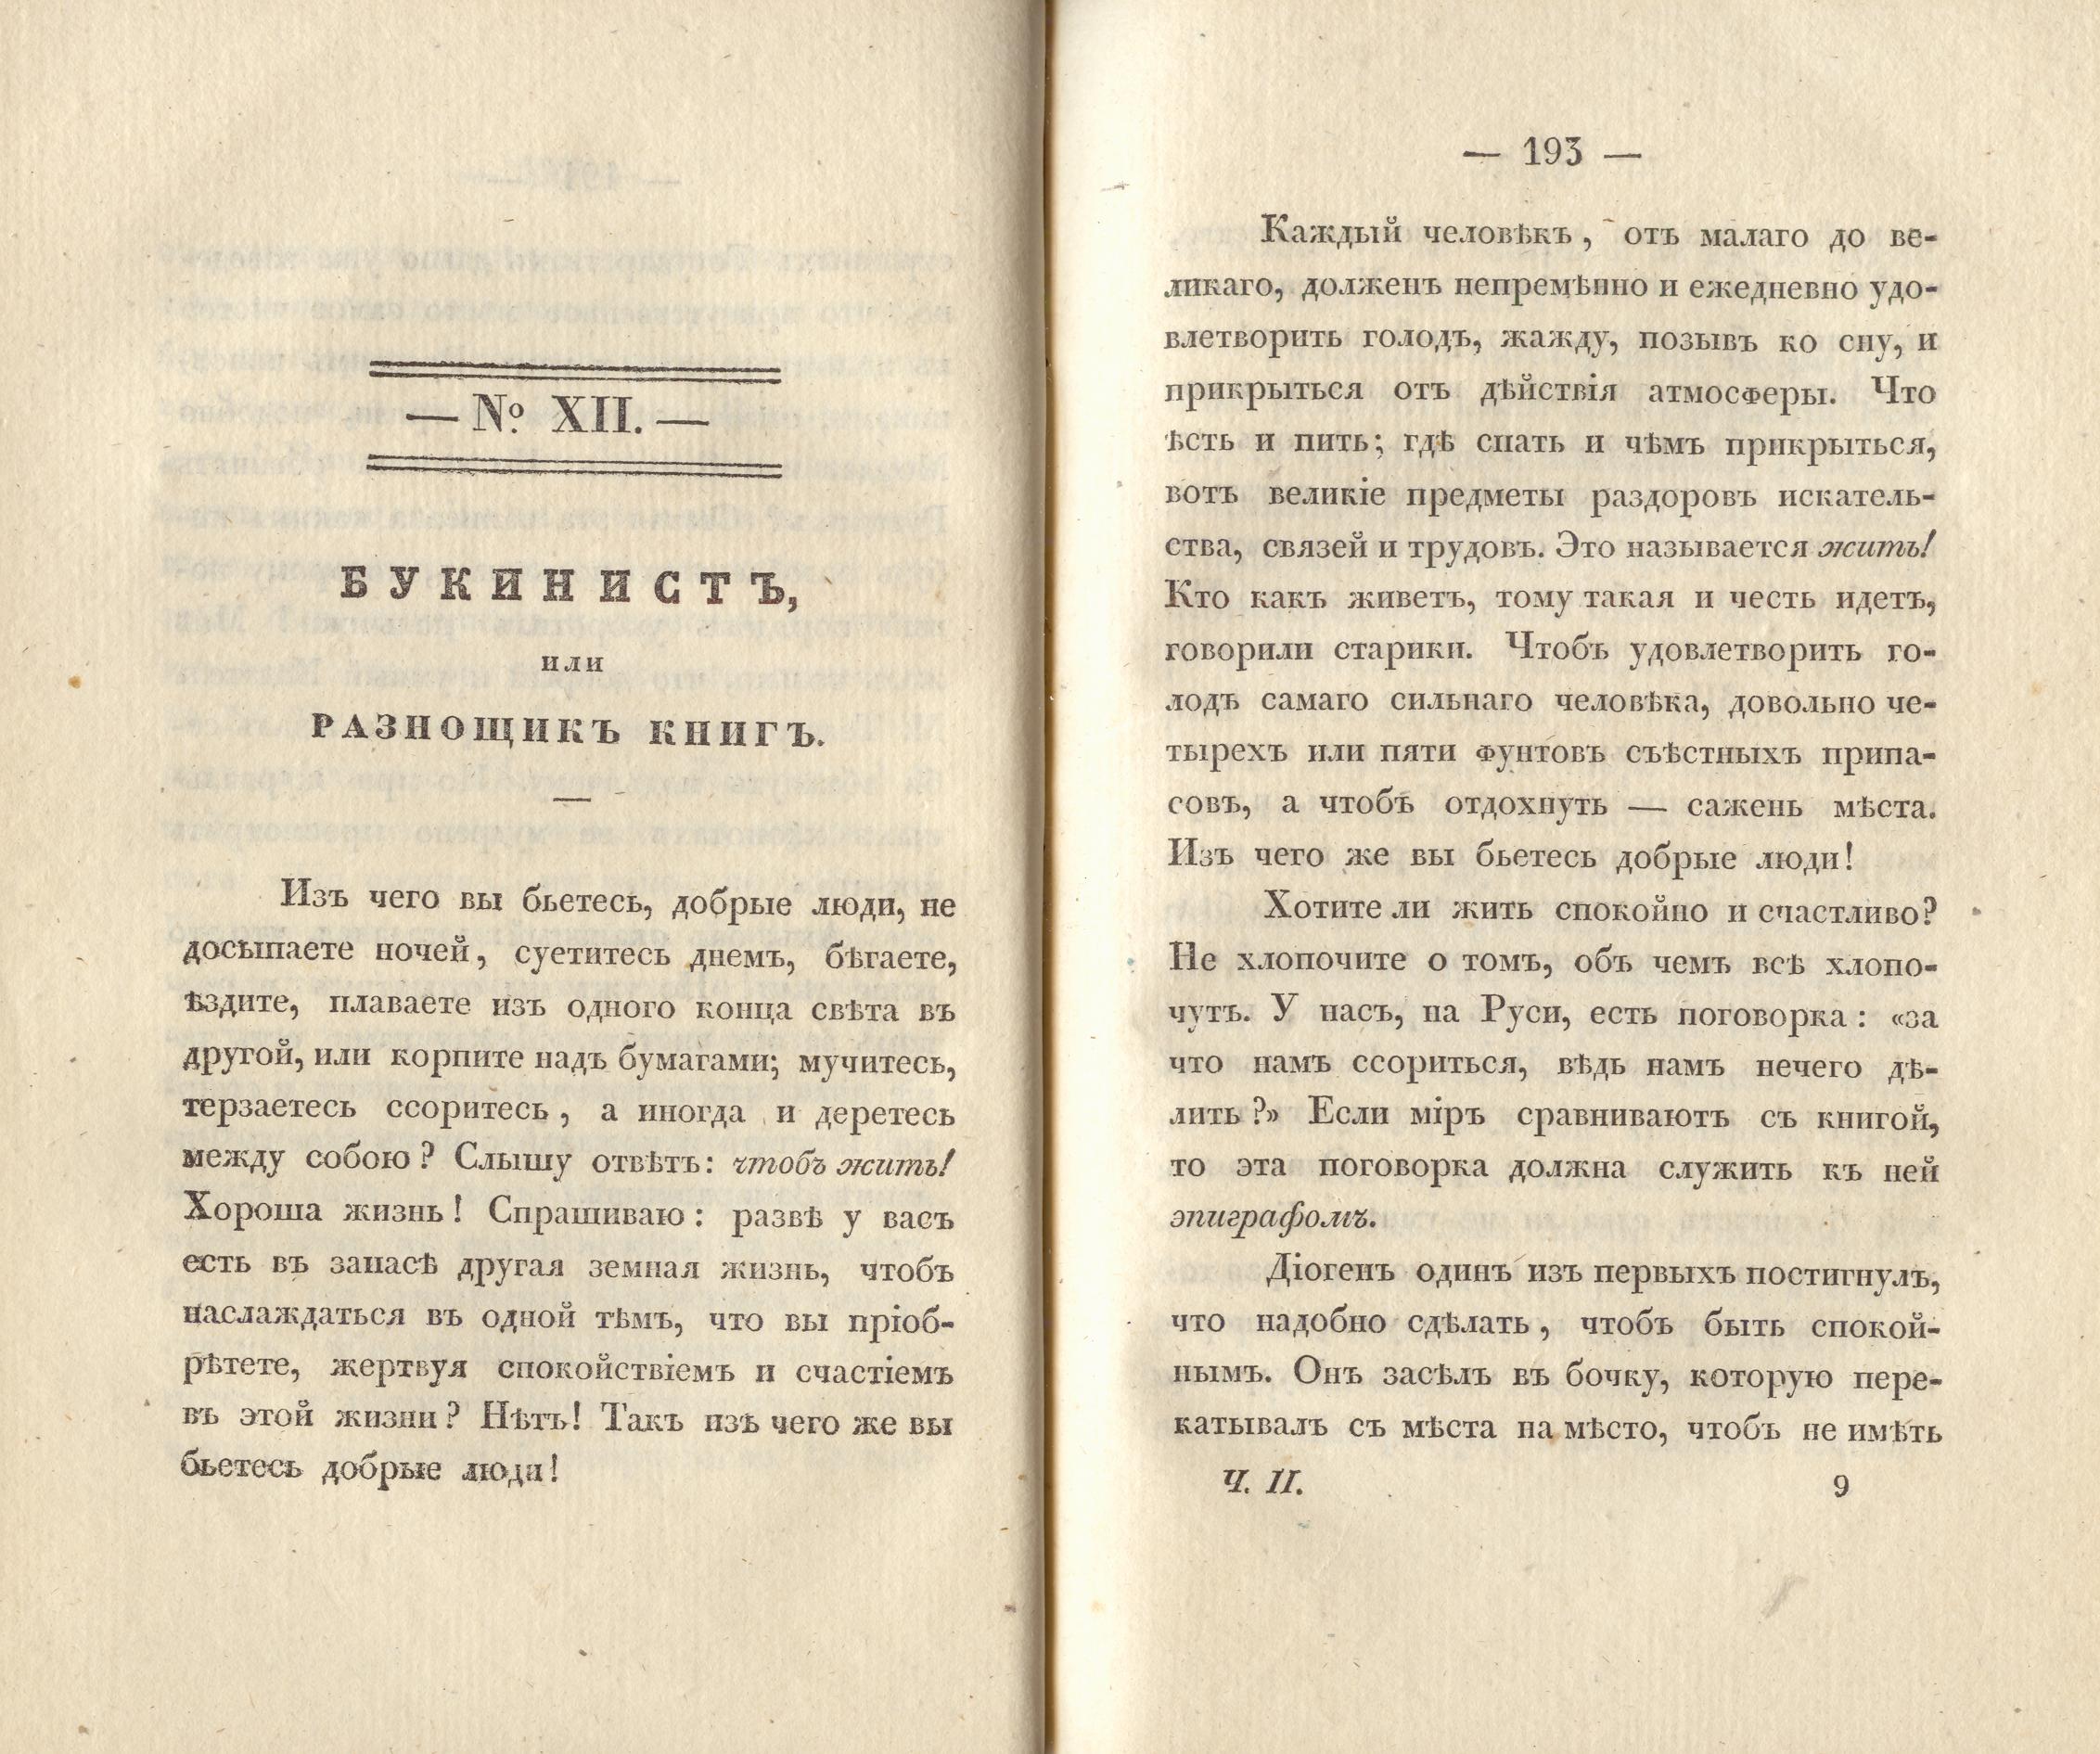 Сочиненія [2] (1836) | 99. (192-193) Main body of text